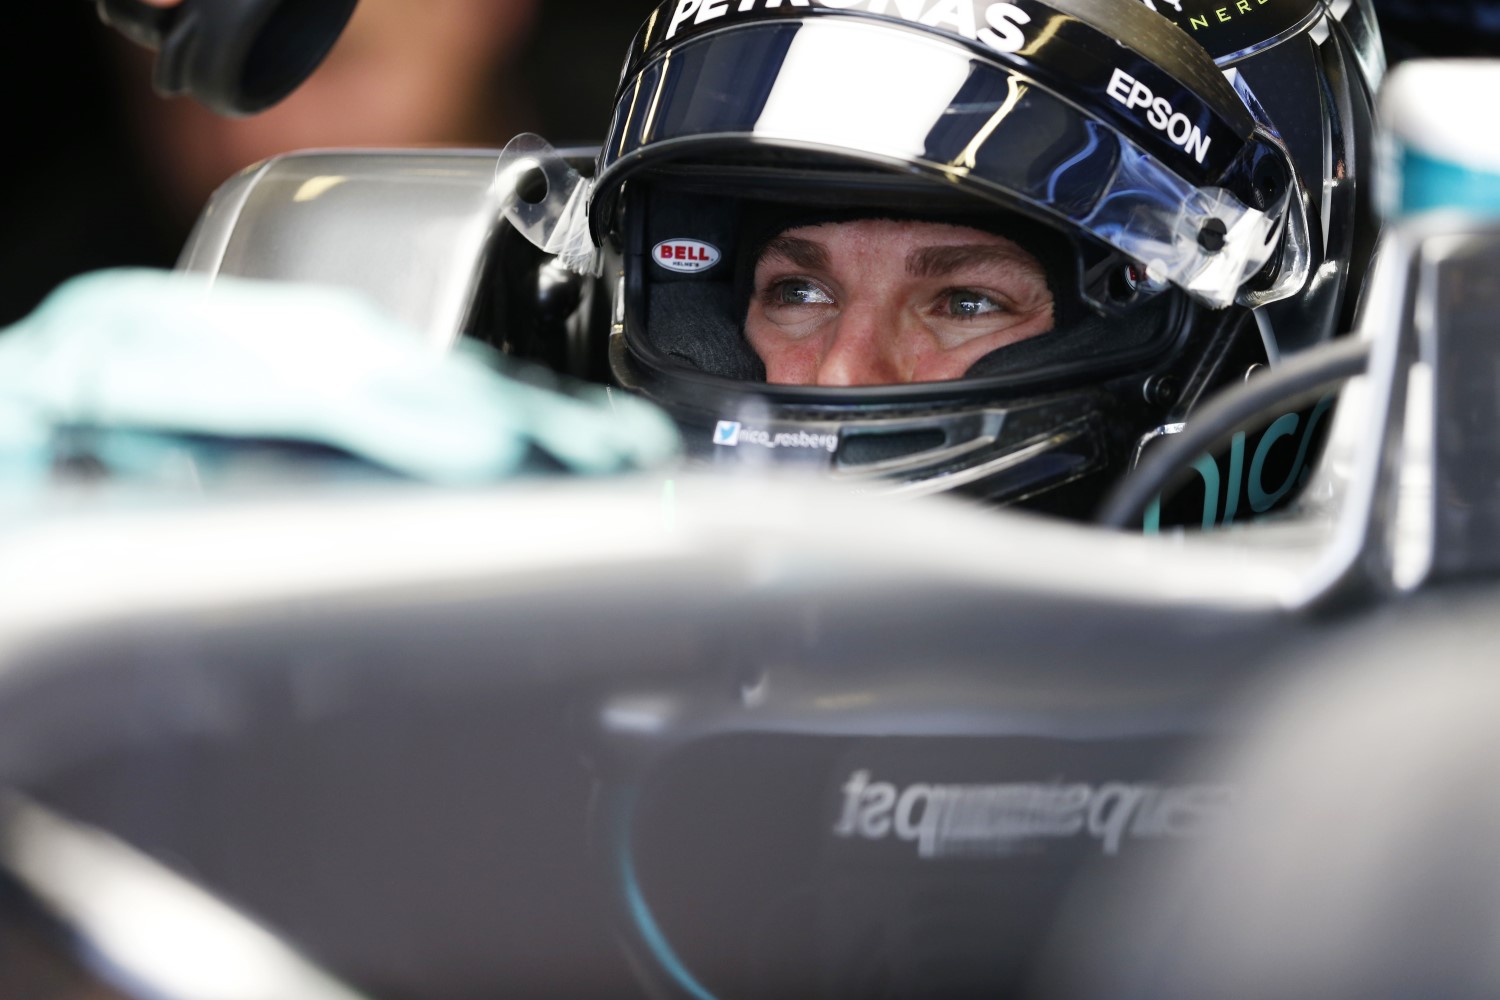 Rosberg must stay focused